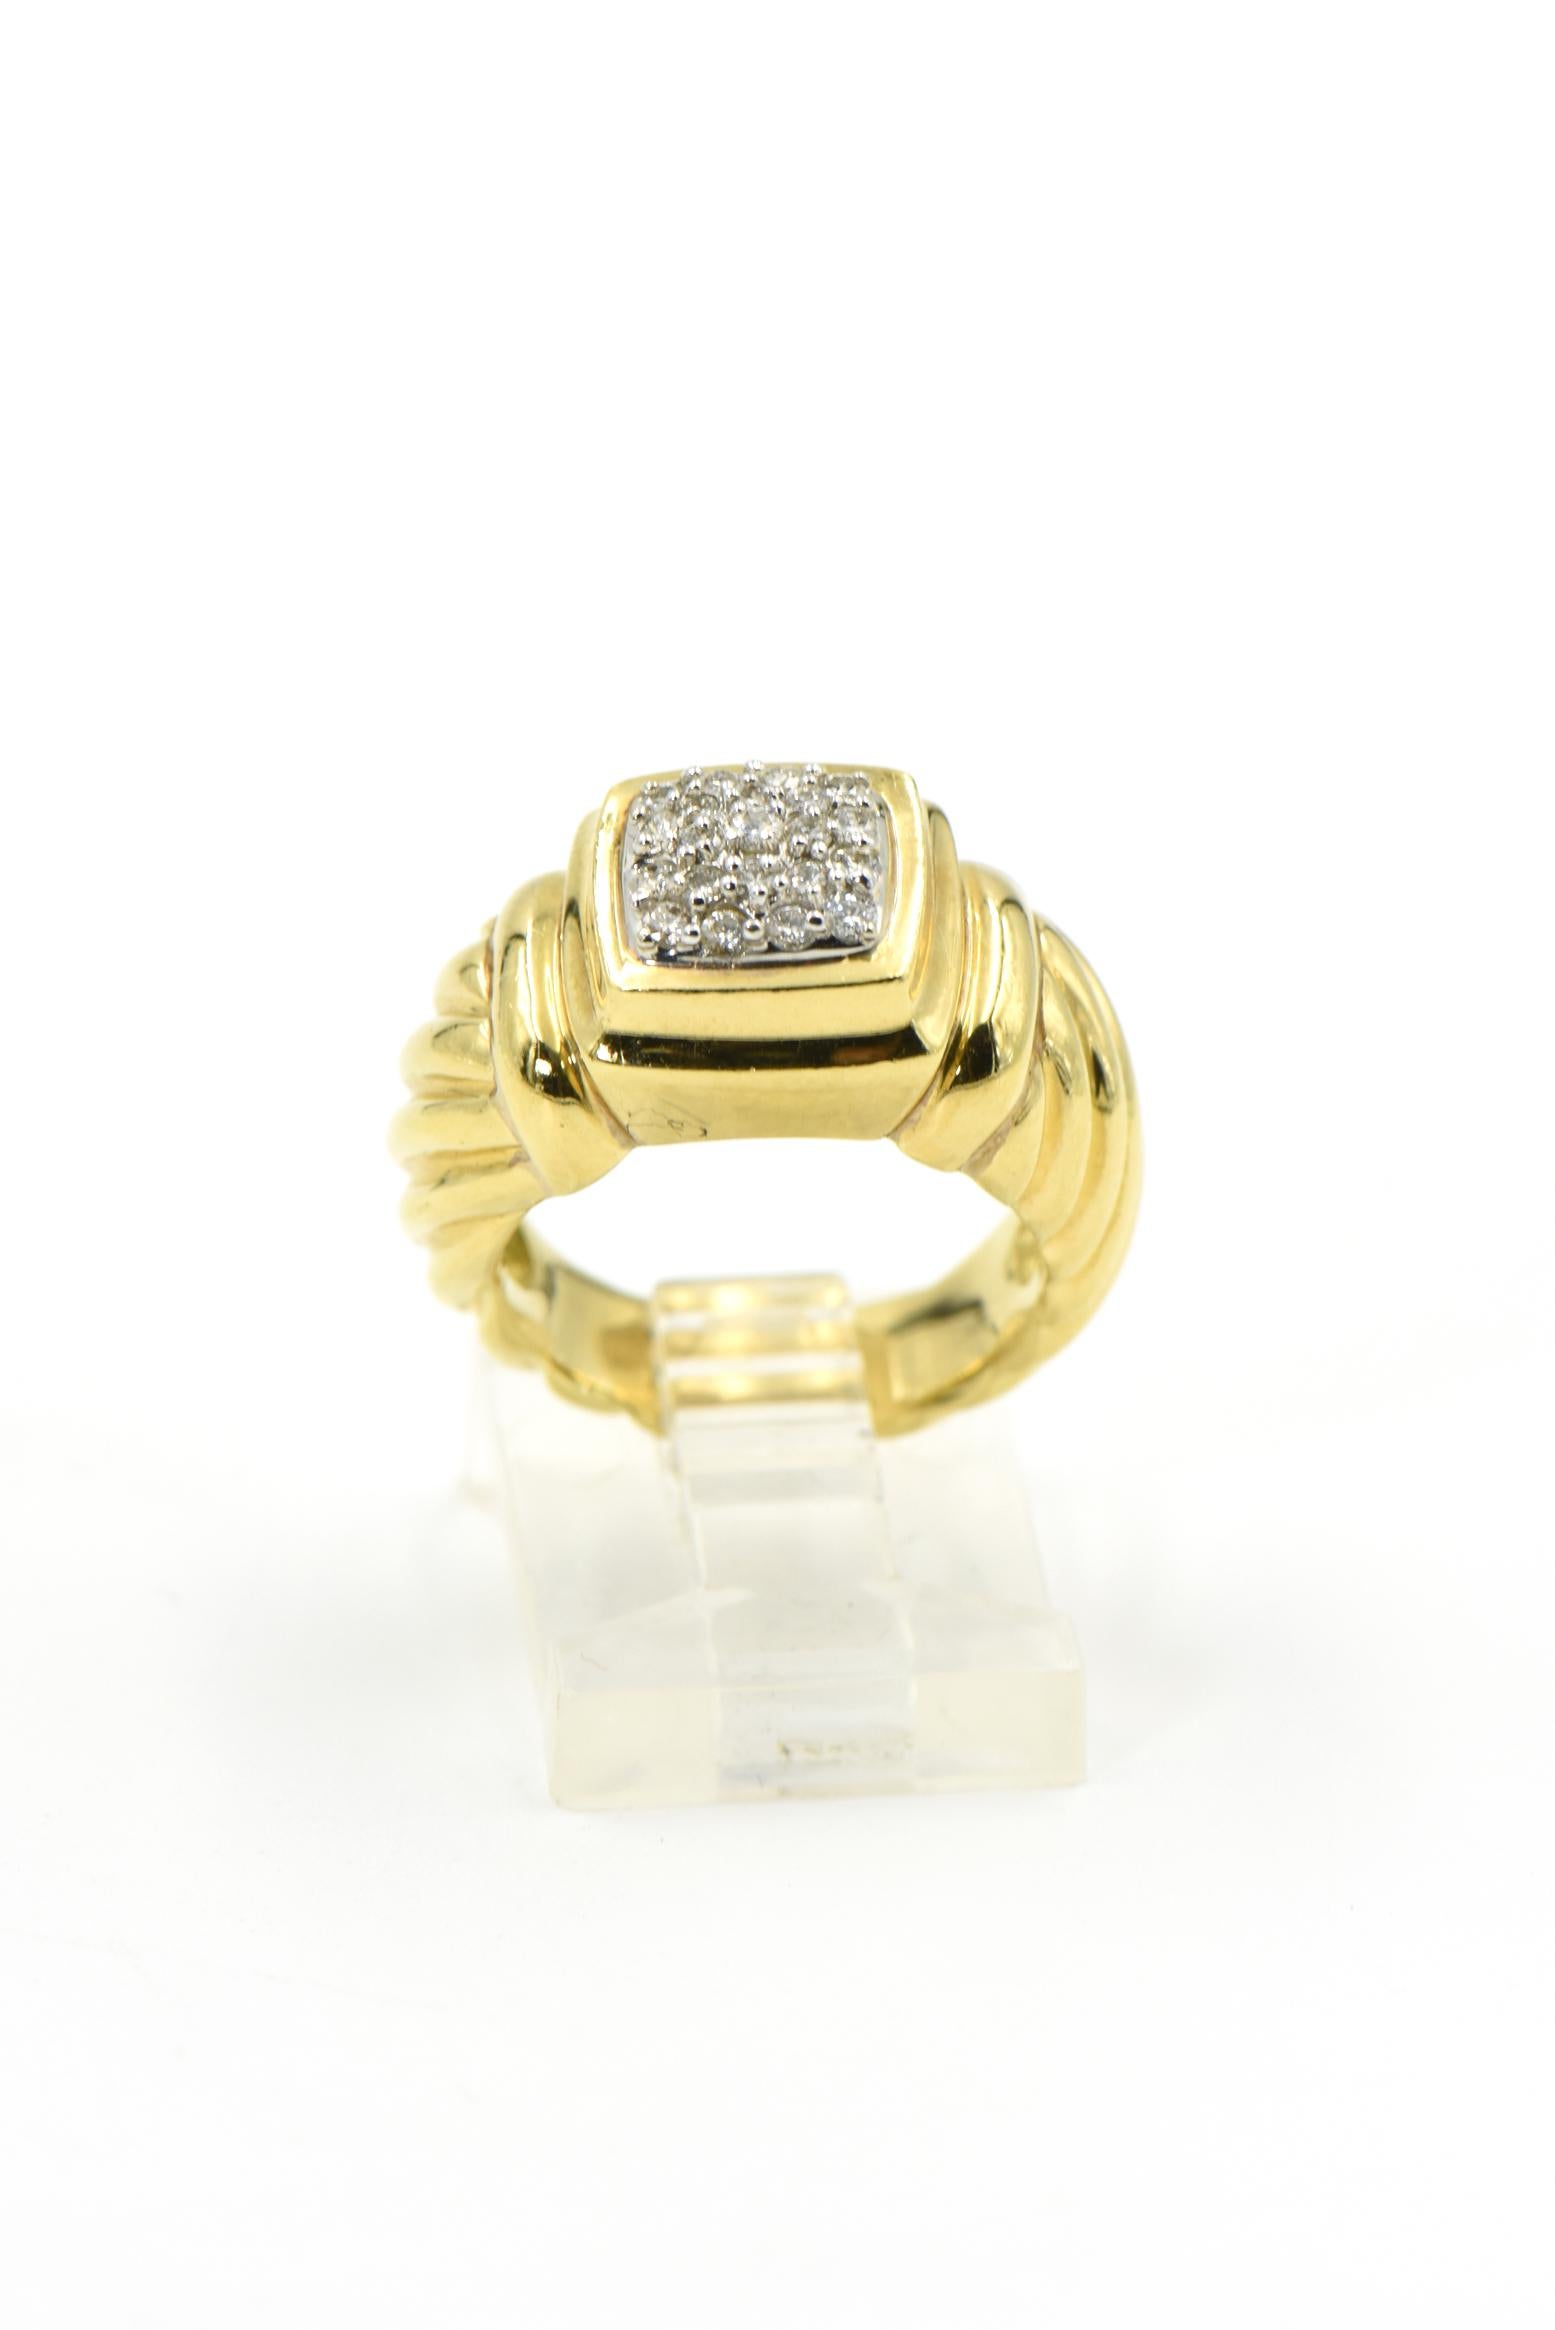 bracelet câble en or jaune 18 carats David Yurman présentant des diamants ronds et brillants de 0,60 carats sertis dans une monture carrée. 
Bague taille 5 
Marqué 750 et poinçon Yurman 
Largeur de la bande 4mm, section frontale 11mm W x 10mm L 
